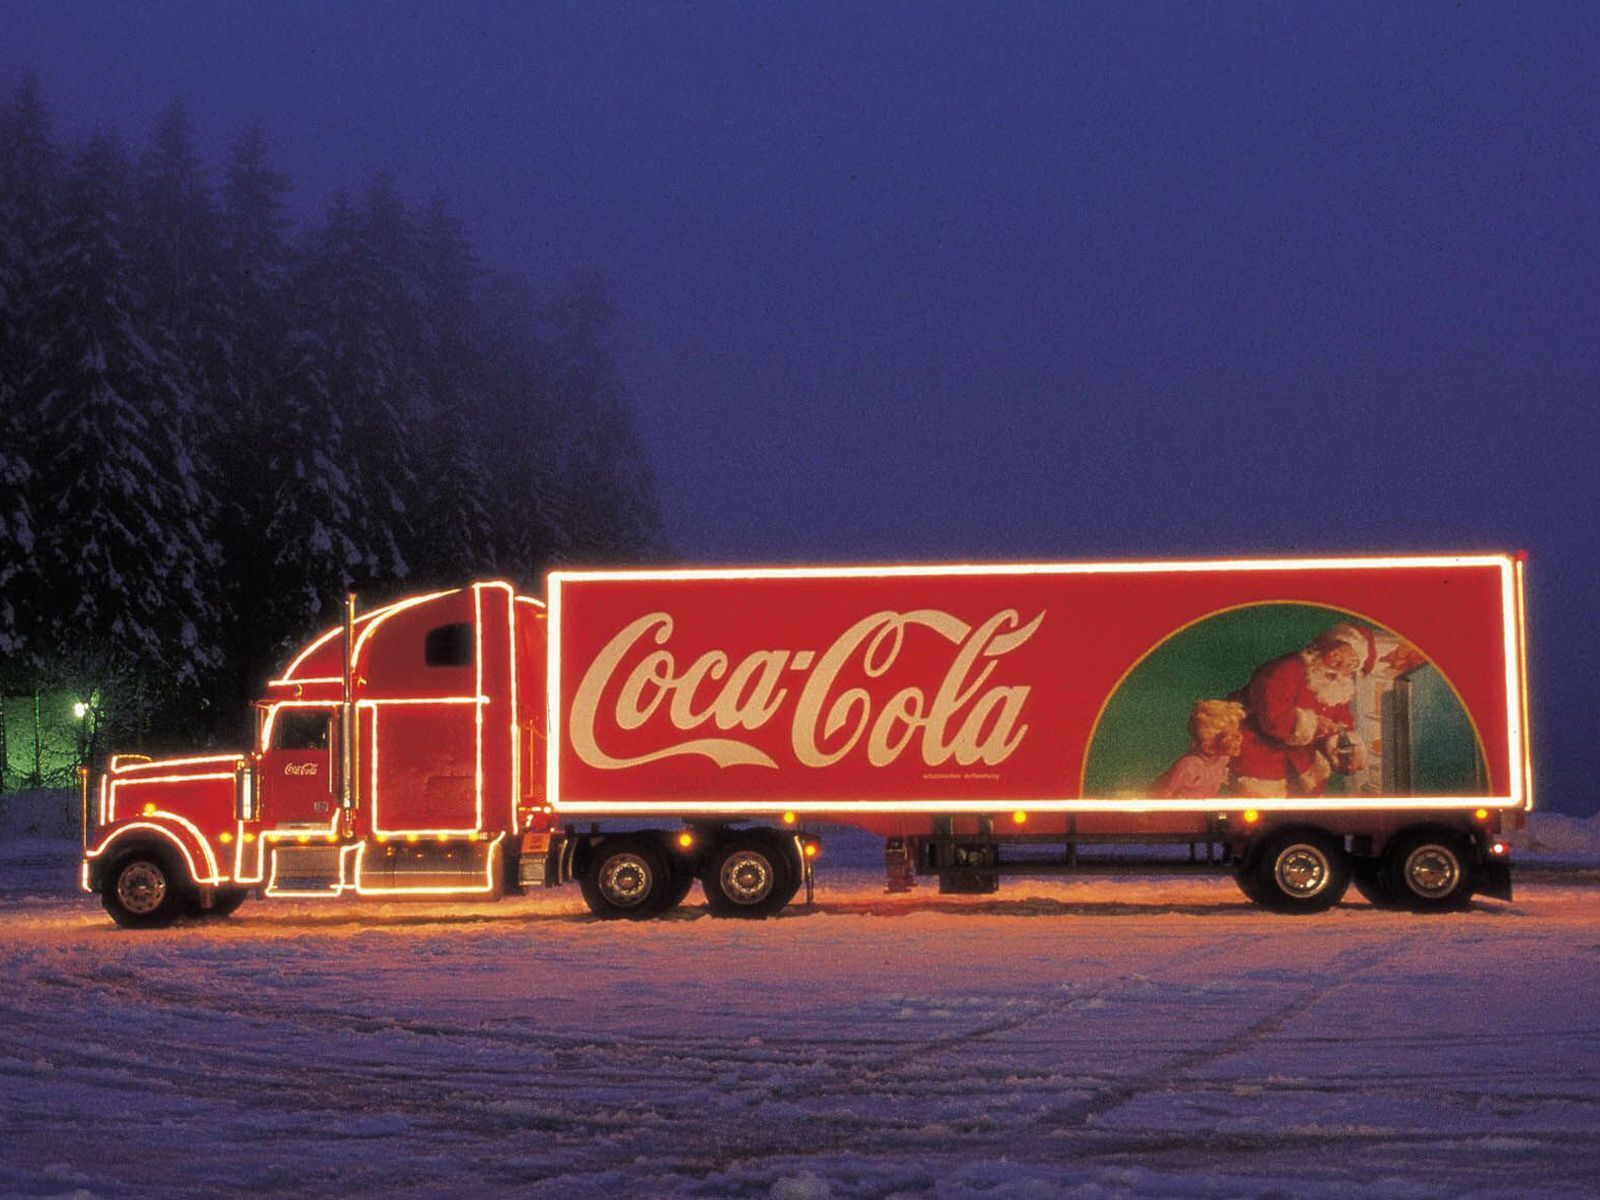 Miscellaneous: Coca Cola Truck, picture nr. 40467